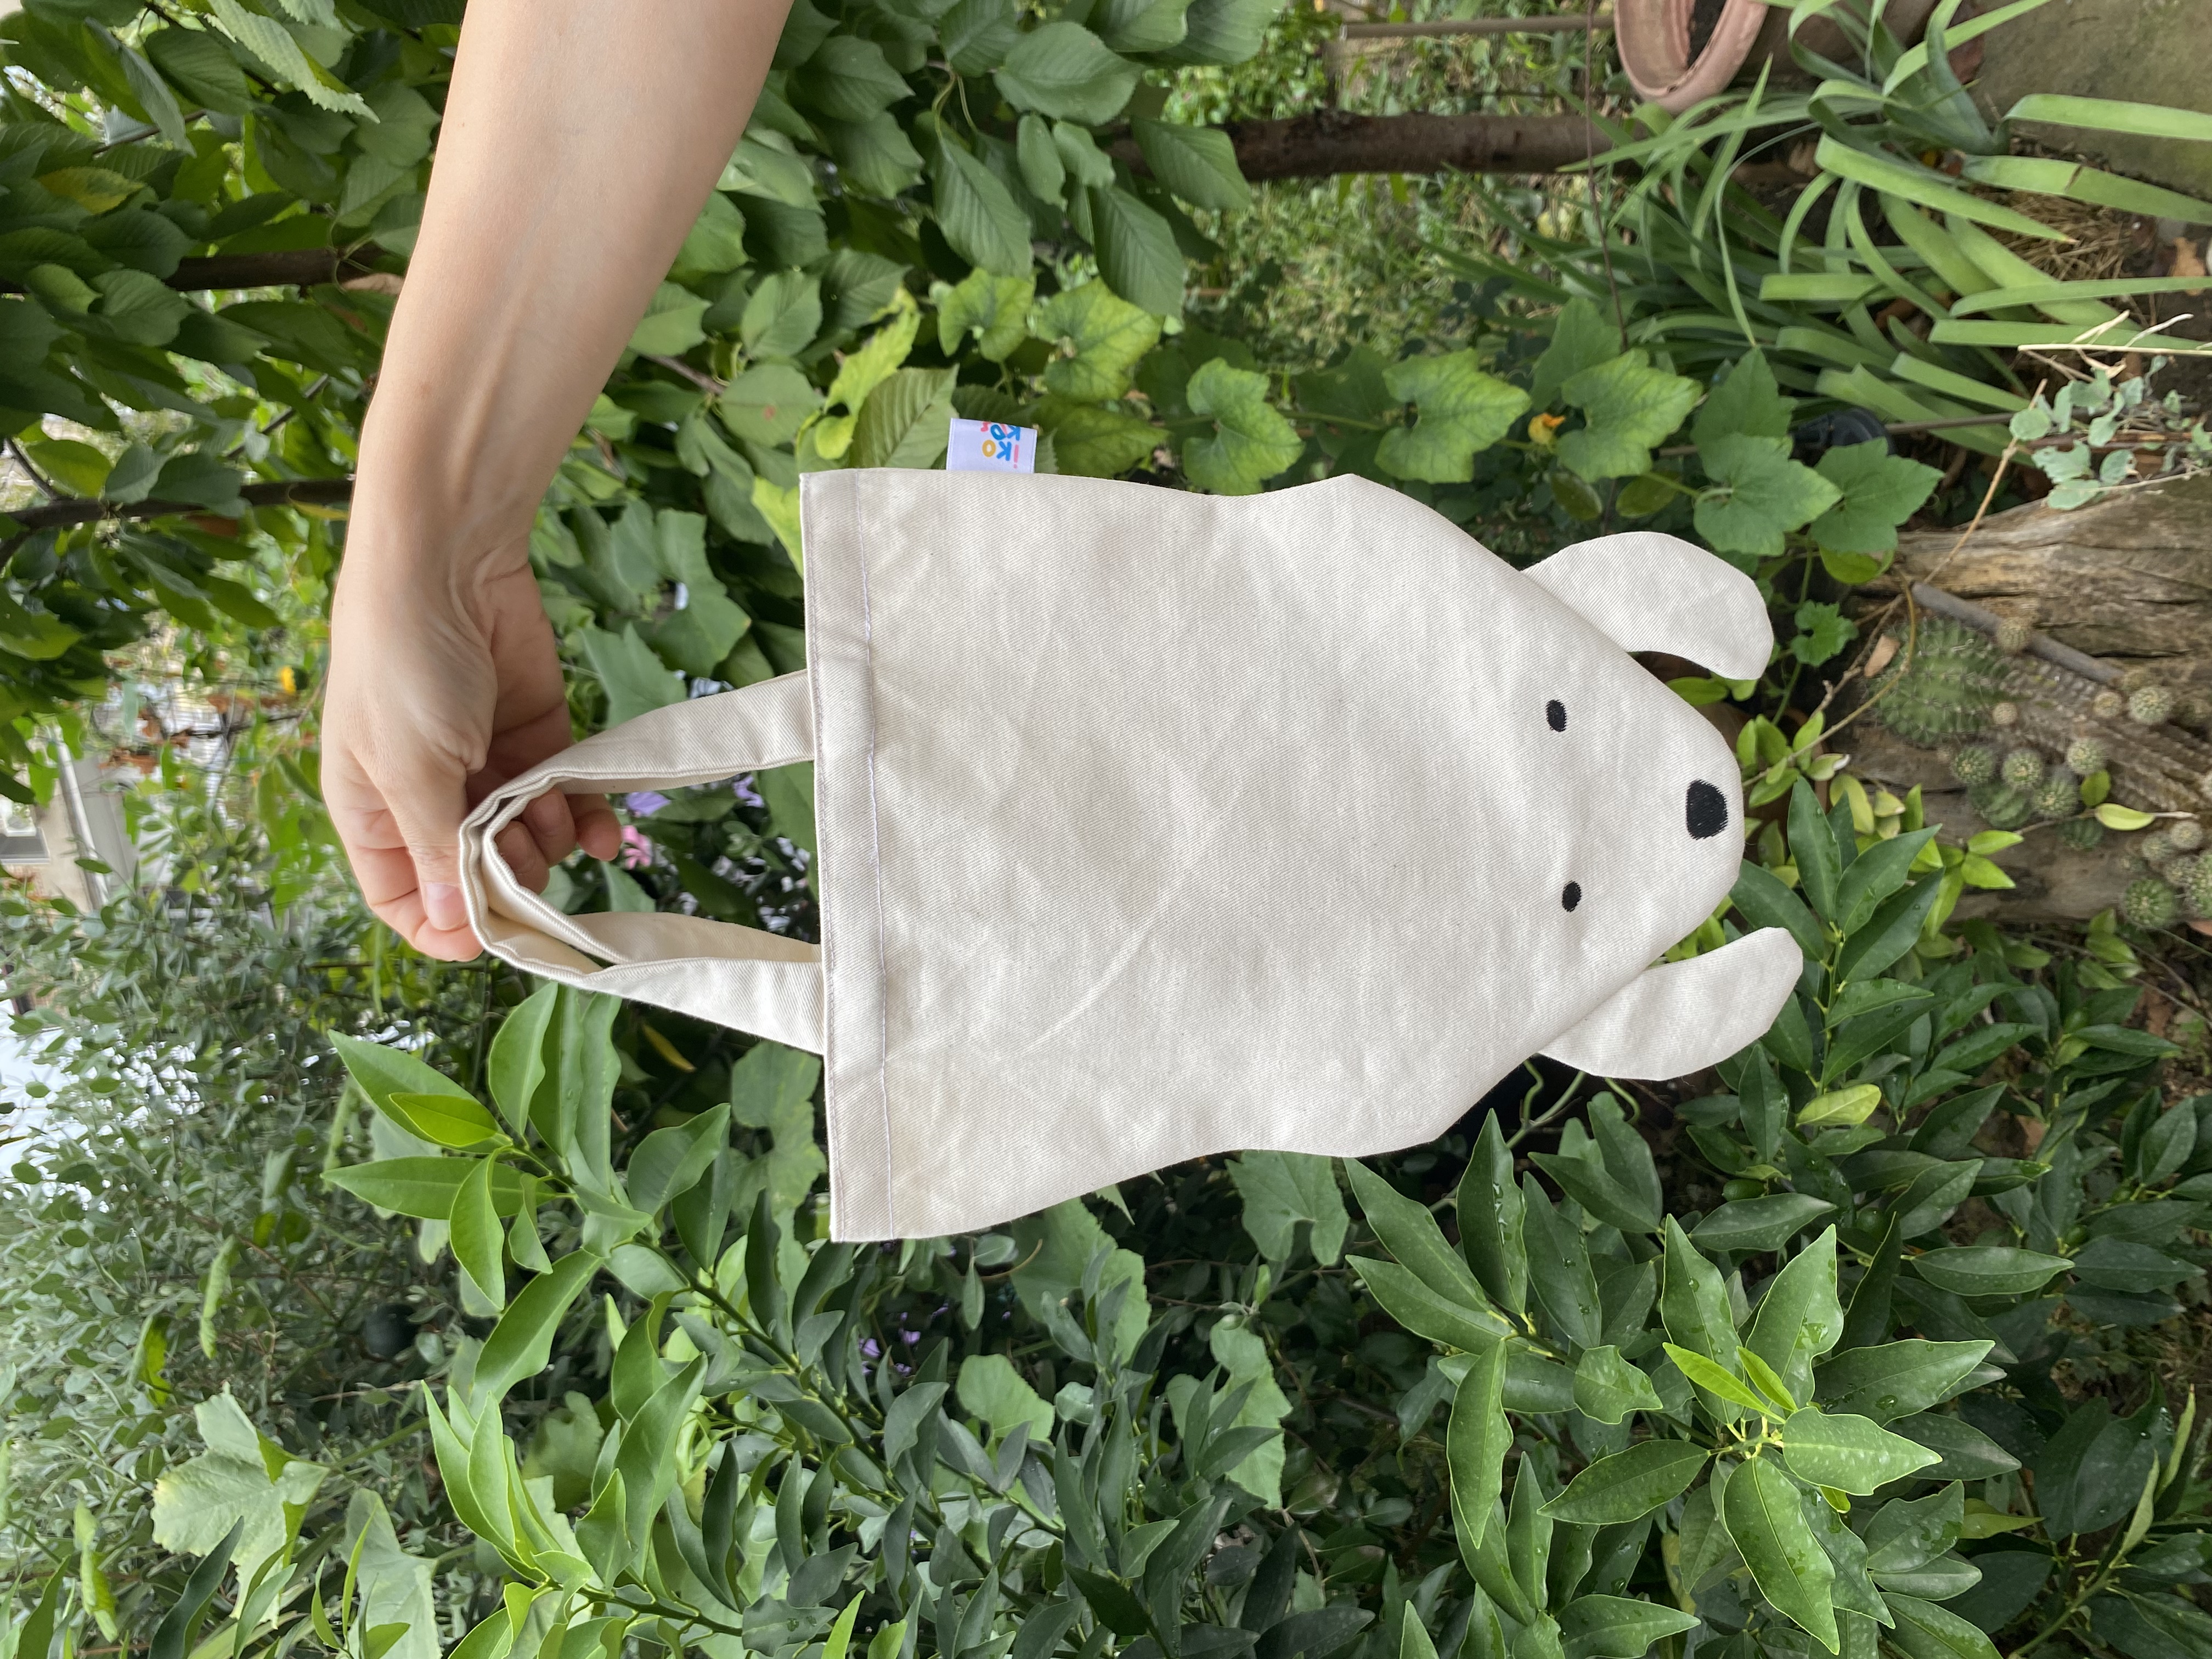 The canvas bag is a teddy bear